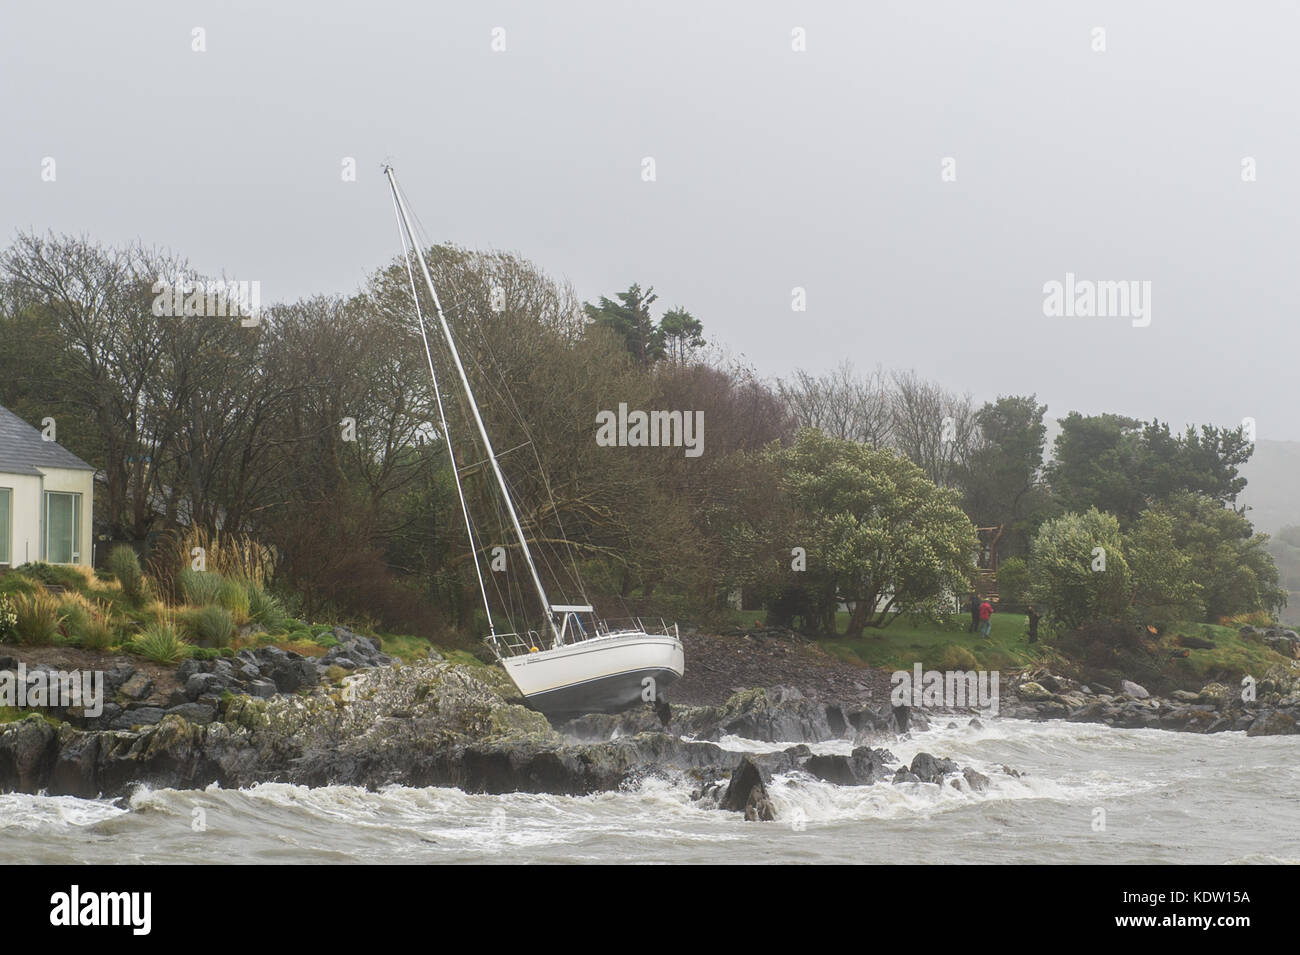 Schull, Irlande 16 Oct, 2017. Ex-Hurricane Ophelia hits Schull, l'Irlande avec des vents de 80km/h et des rafales de 130km/h. D'importants dommages structuraux s'attend à ce que le pire est encore à venir. Une location de raquettes sur les rochers après qu'elle a largué les amarres en raison de vents très élevés. Credit : Andy Gibson/Alamy Live News. Banque D'Images